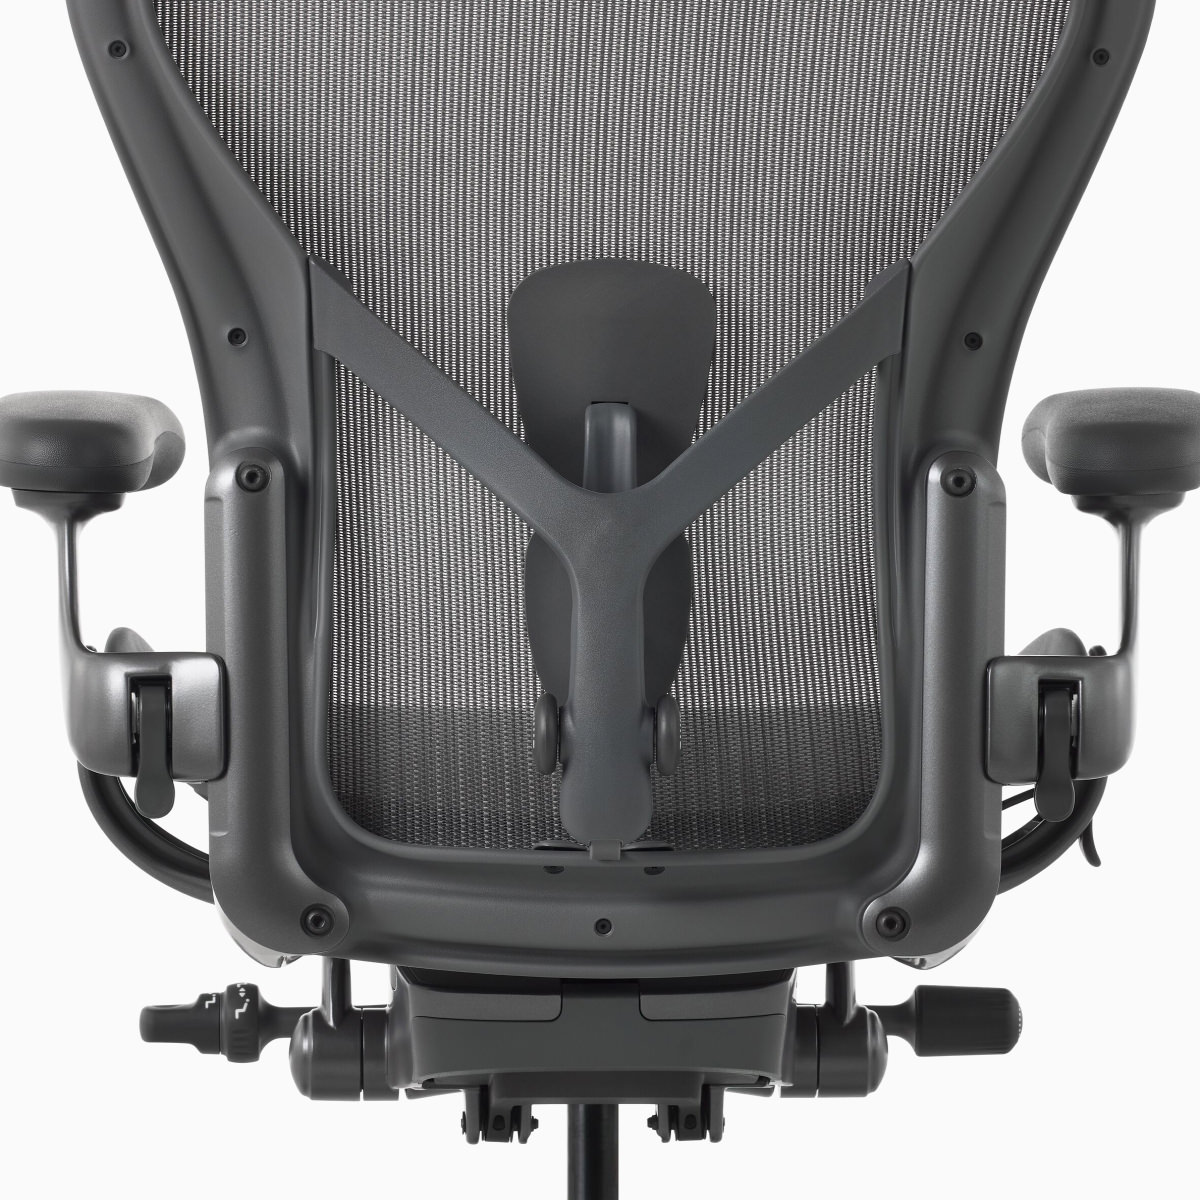 Vista posterior de una silla Aeron con PostureFit SL ajustable.